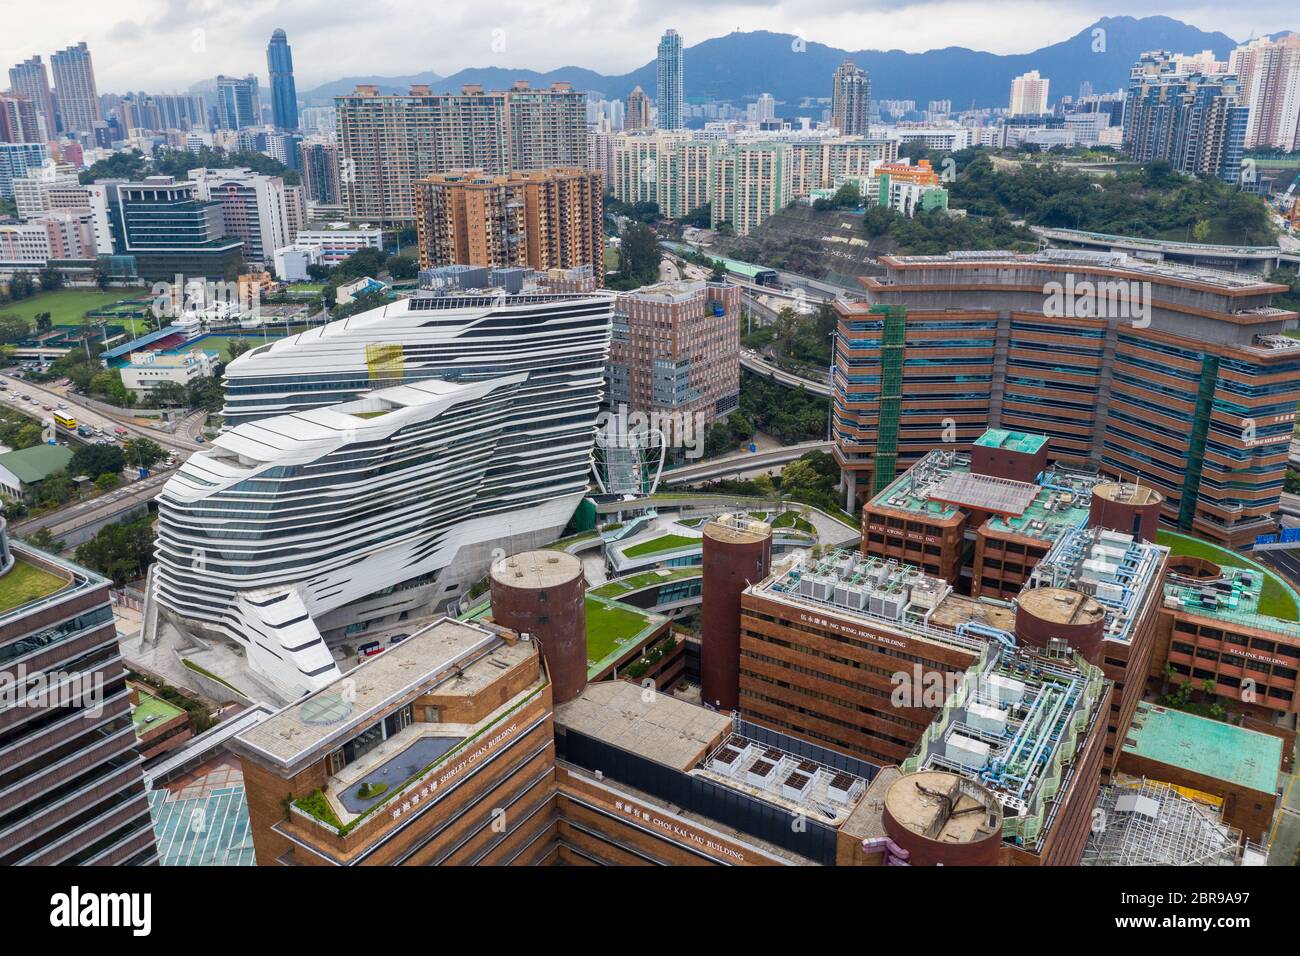 Hung Hom, Hong Kong 21 April 2019: Top view of university architecture in Hong Kong Stock Photo